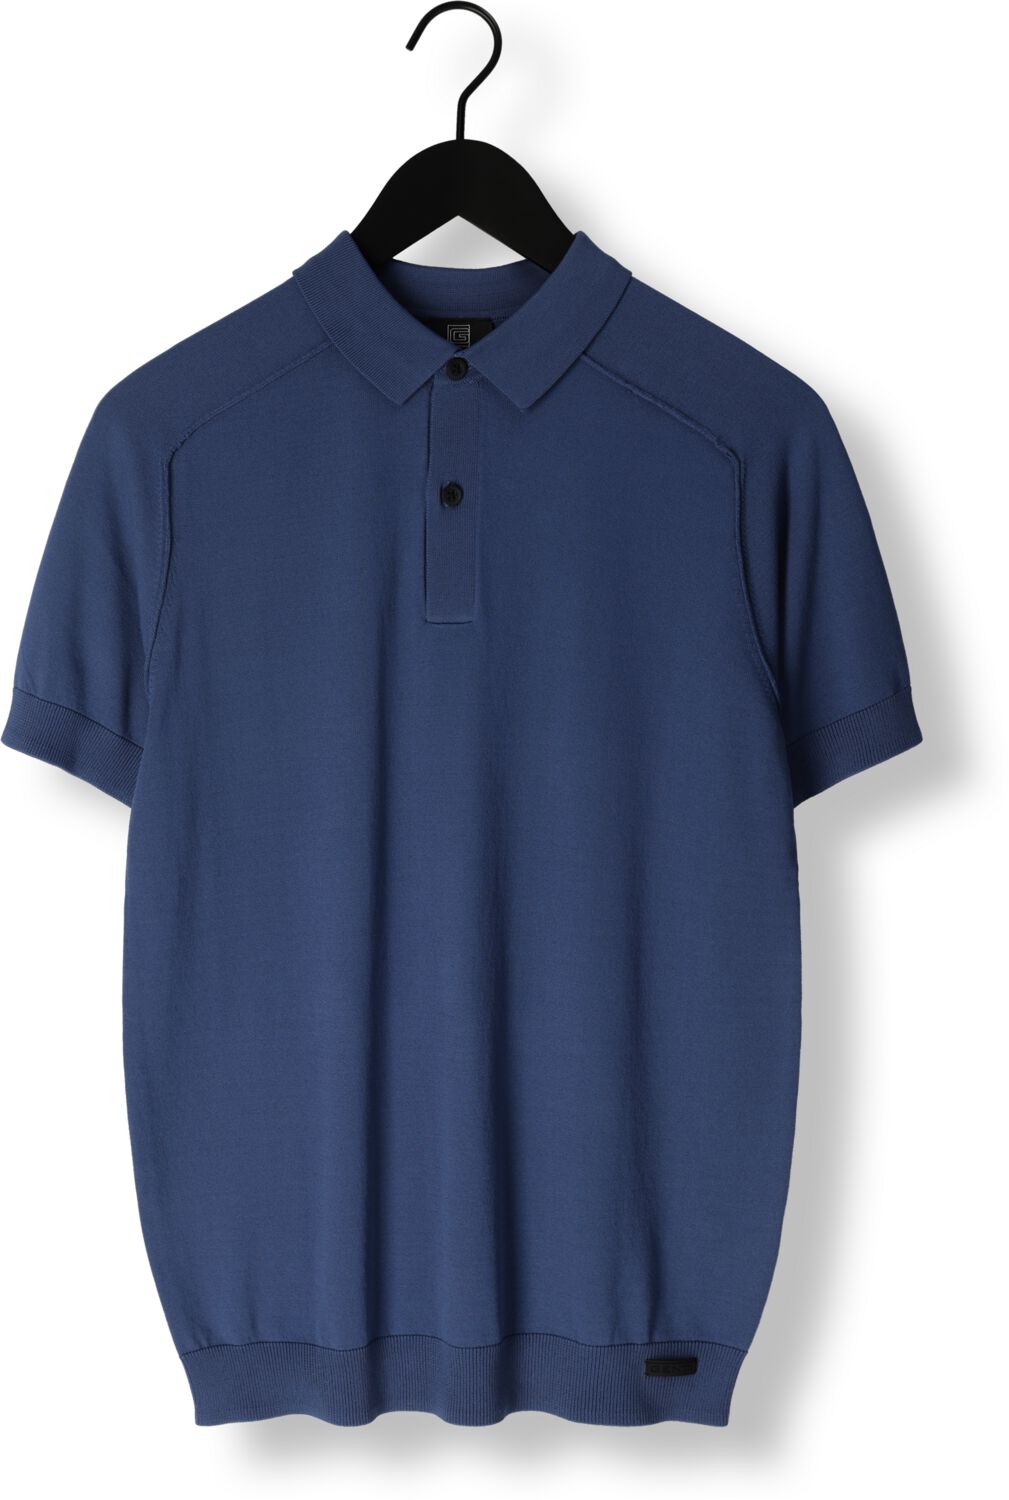 GENTI Heren Polo's & T-shirts K9116-1260 Blauw